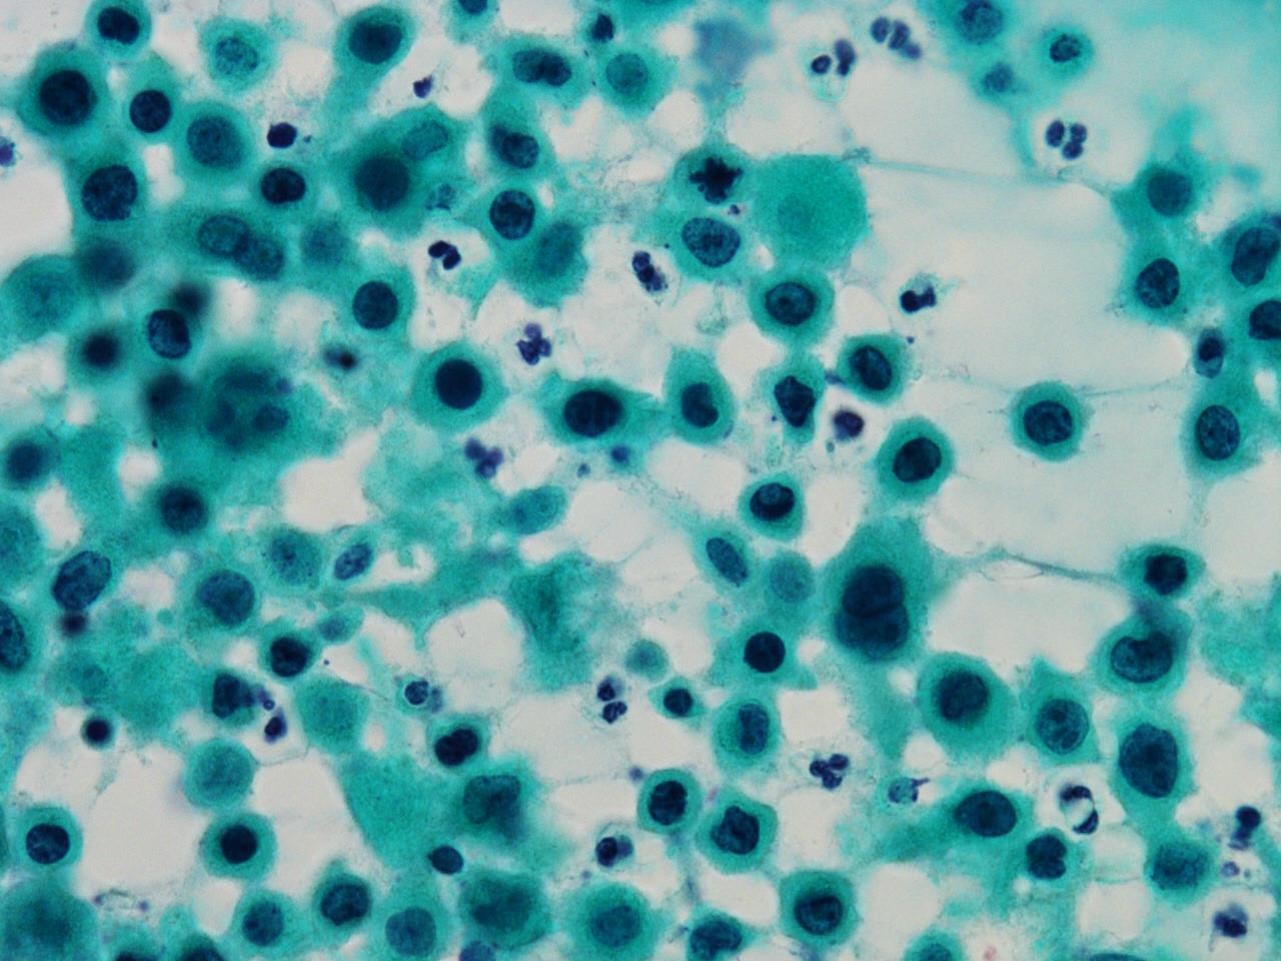 リンパ腫 b 細胞 性 大 びまん 型 細胞